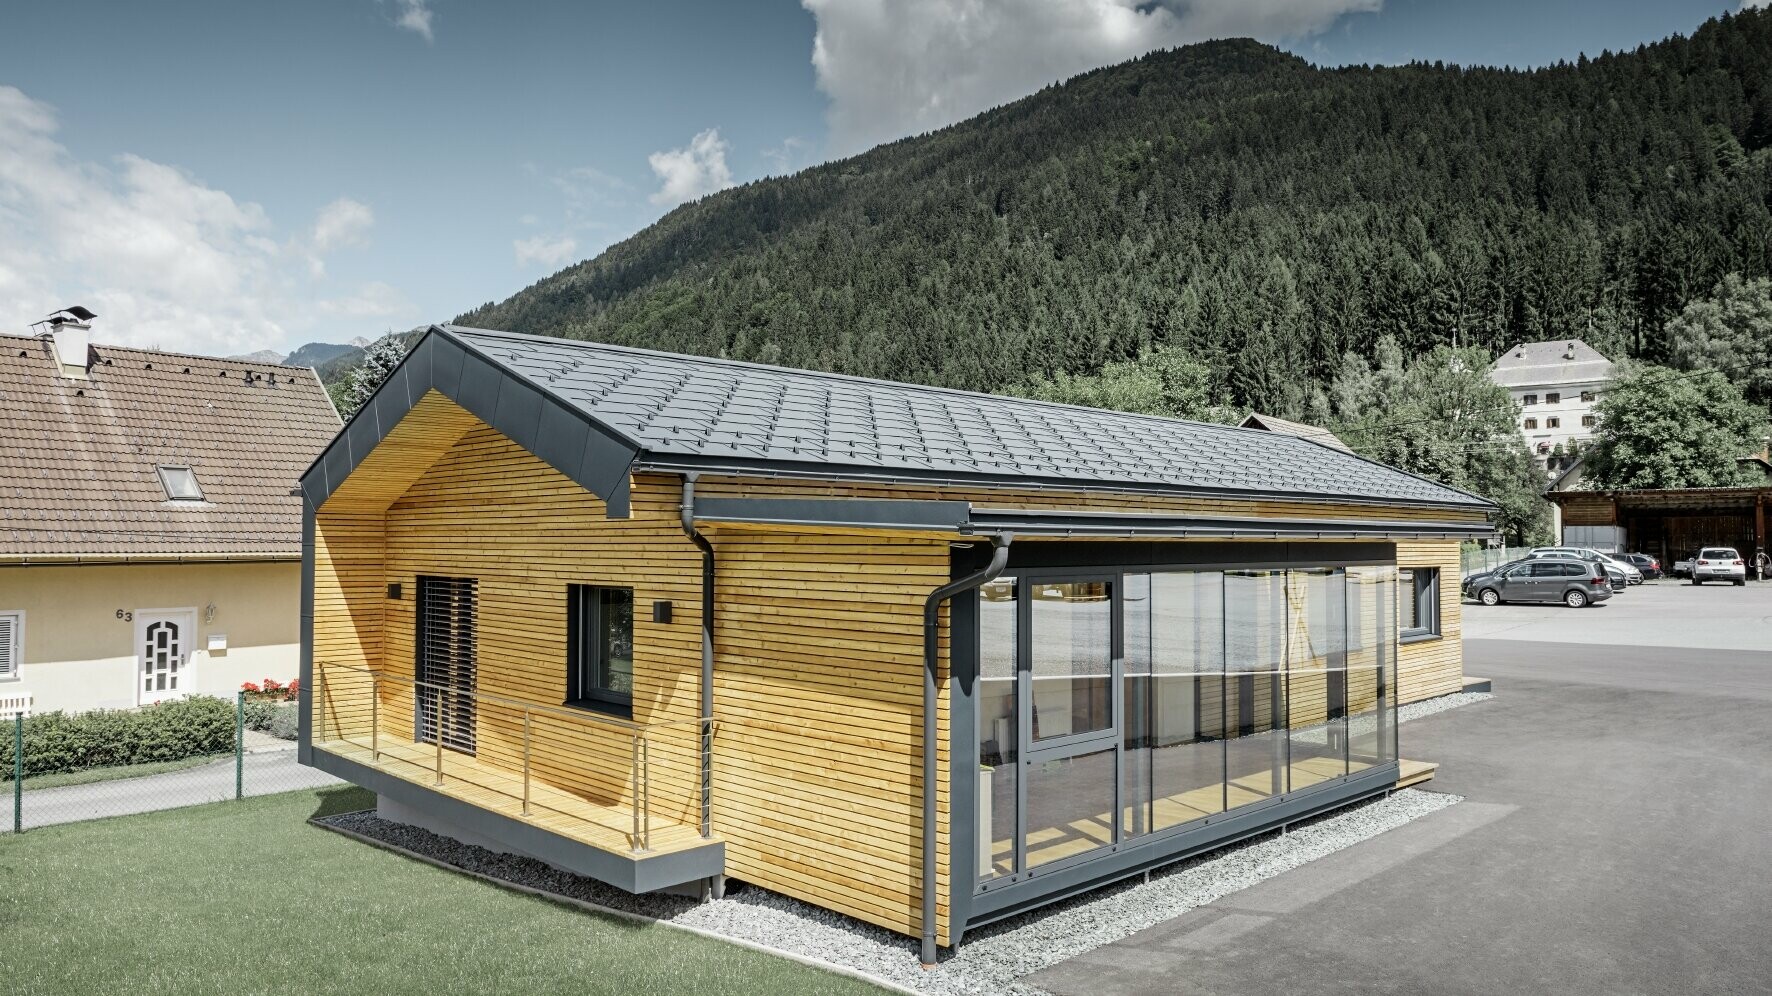 Neues Bürohaus der Firma Holzbau Faltheiner mit Lärchenholz-Fassade und einem PREFA Dach in anthrazit und großen Glasflächen, das Satteldach hat kaum Dachvorsprung und wirkt sehr modern